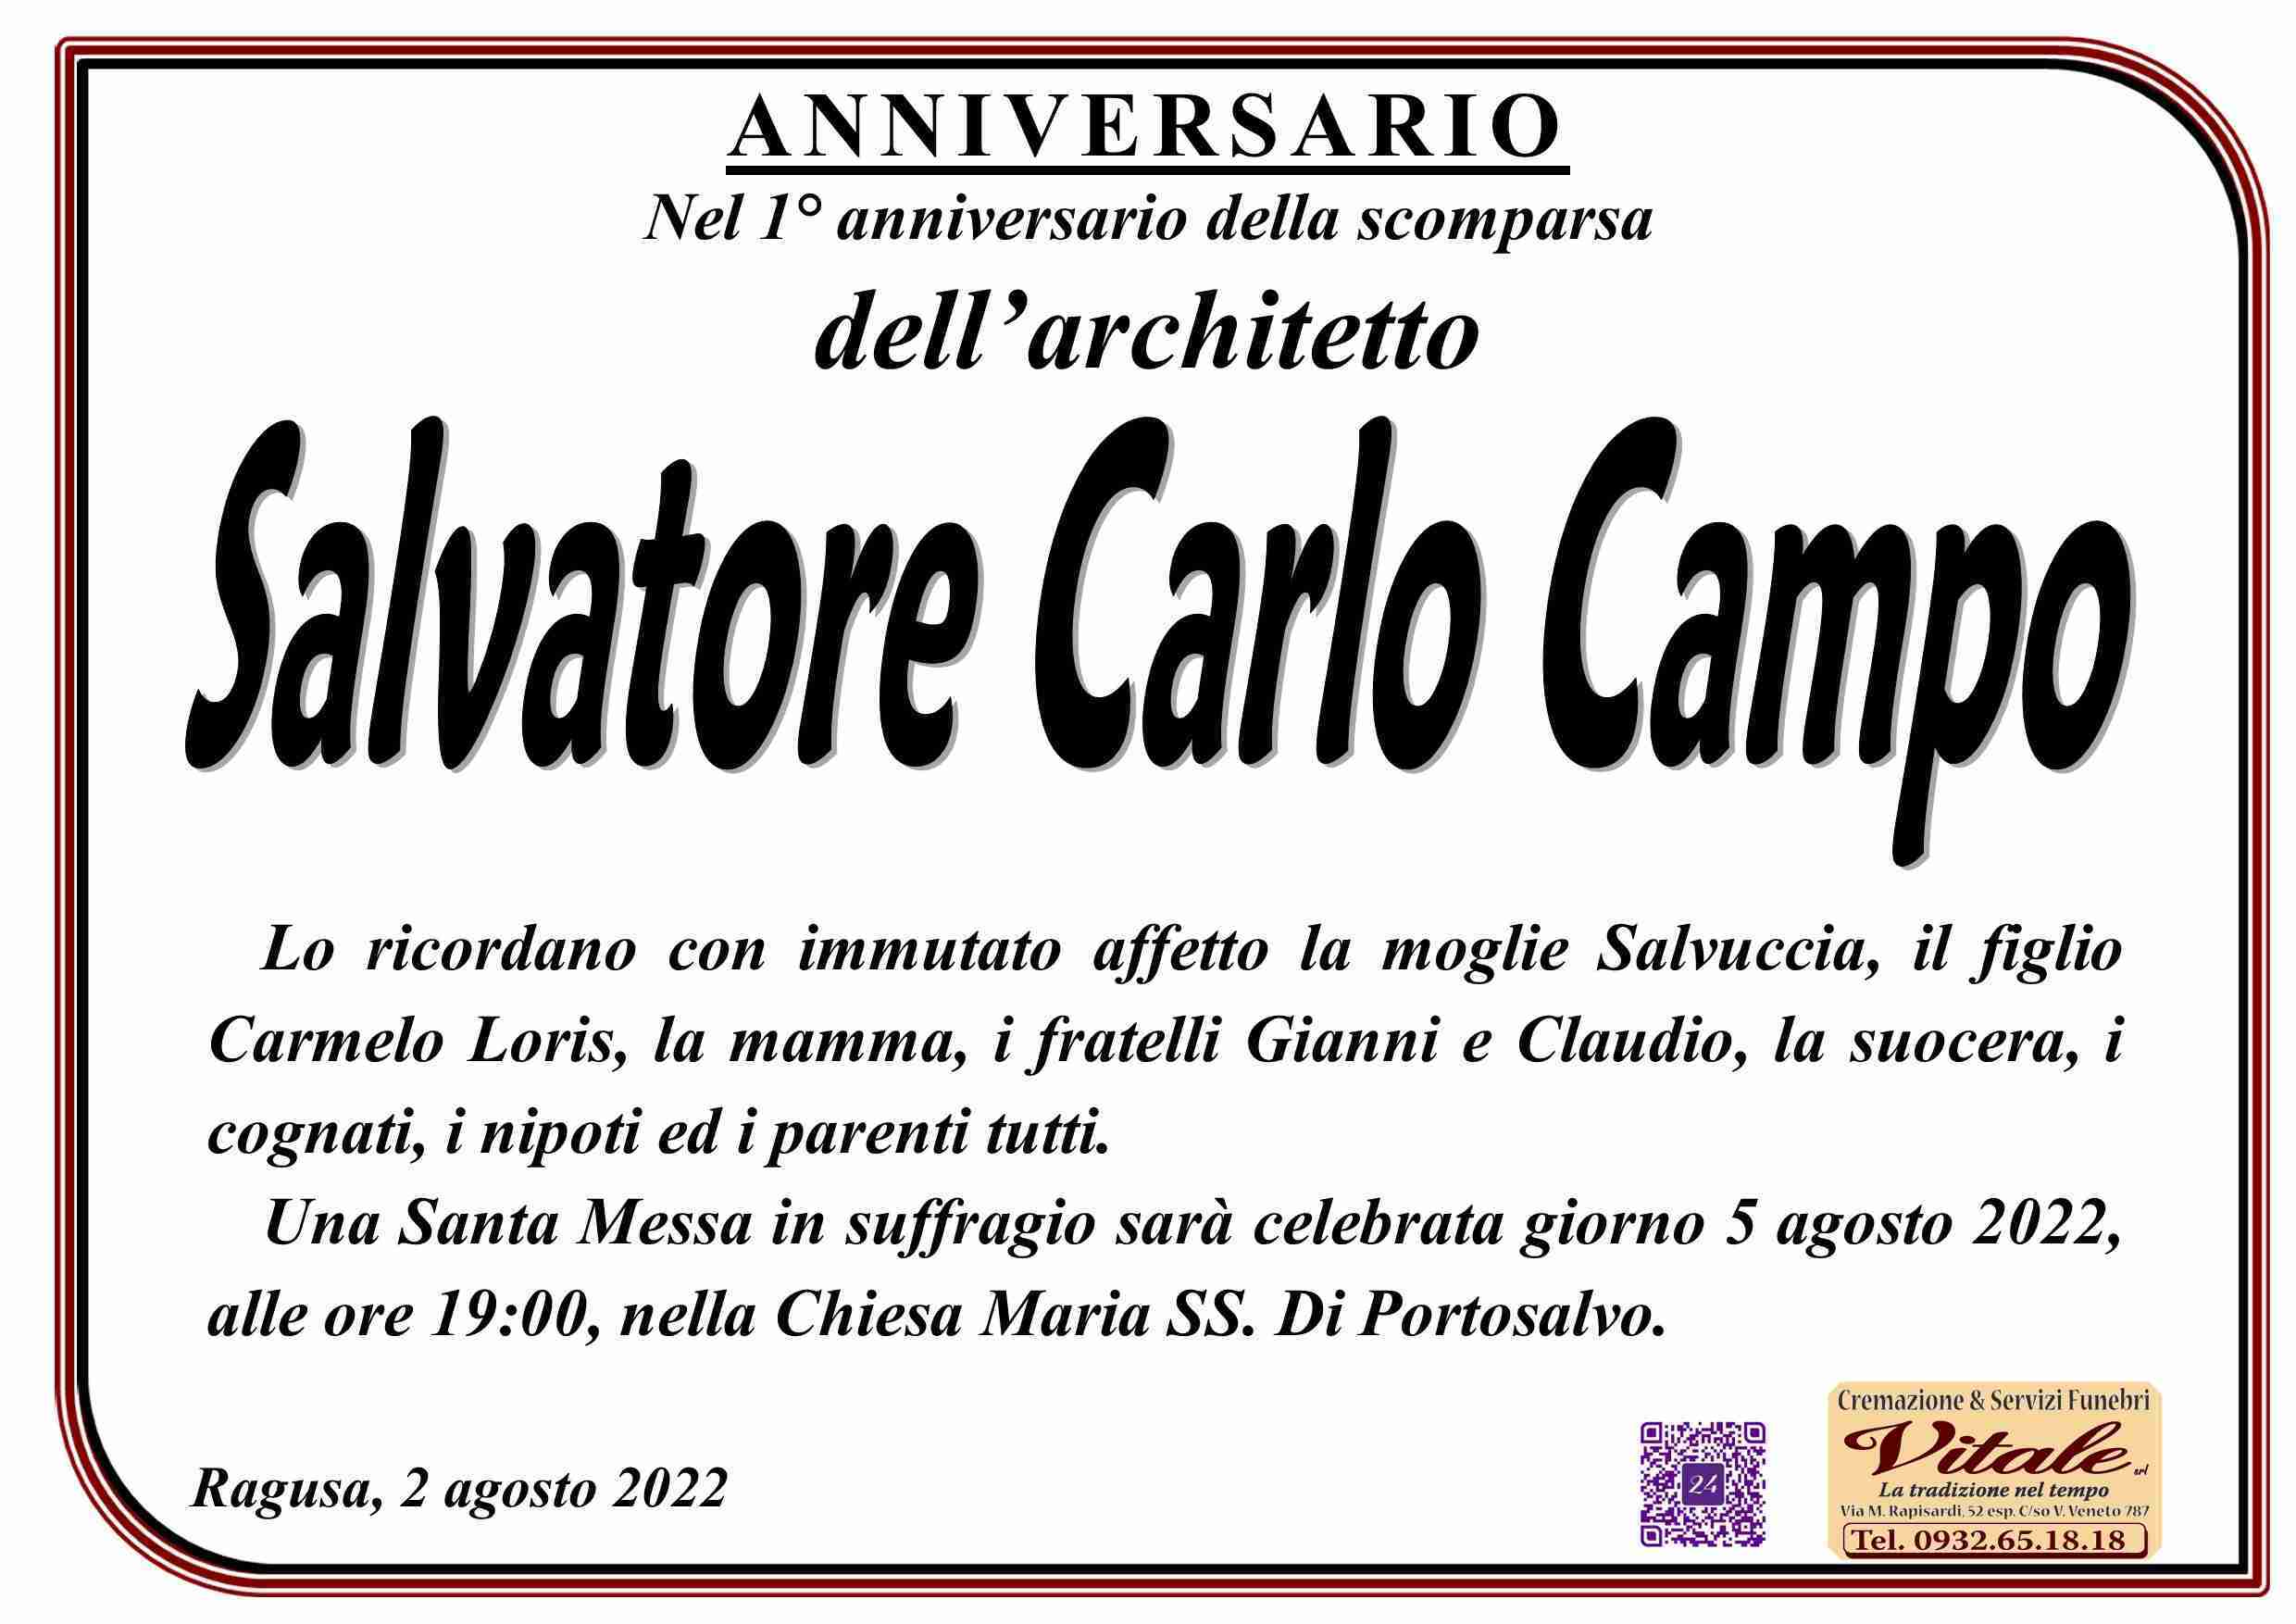 Salvatore Carlo Campo